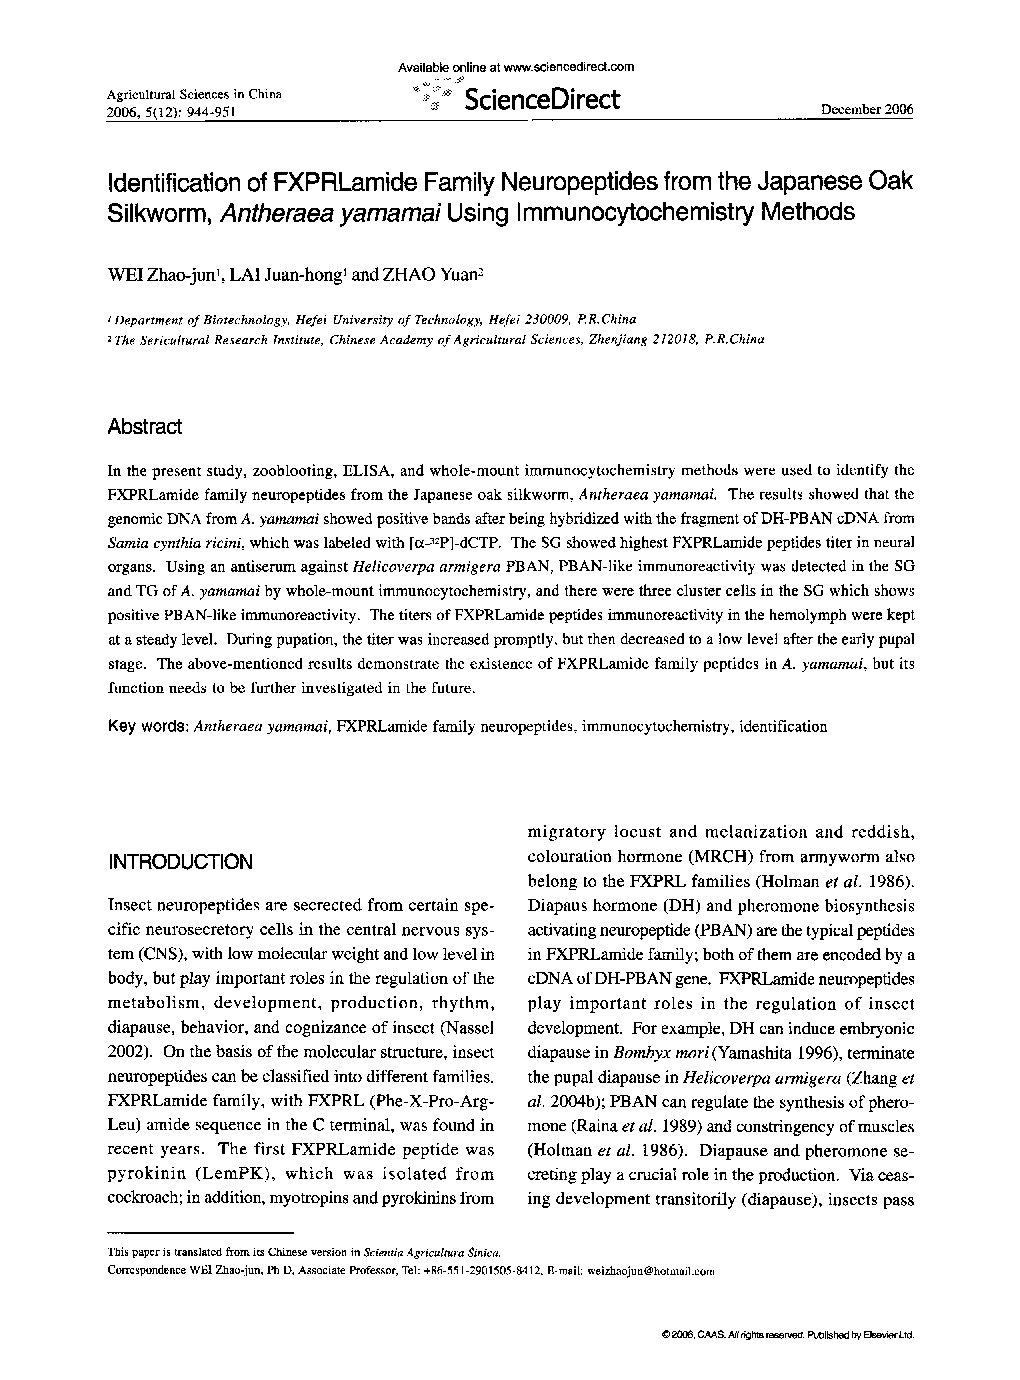 Identification of FXPRLamide Family Neuropeptides from the Japanese Oak Silkworm, Antheraea yamamai Using Immunocytochemistry Methods 